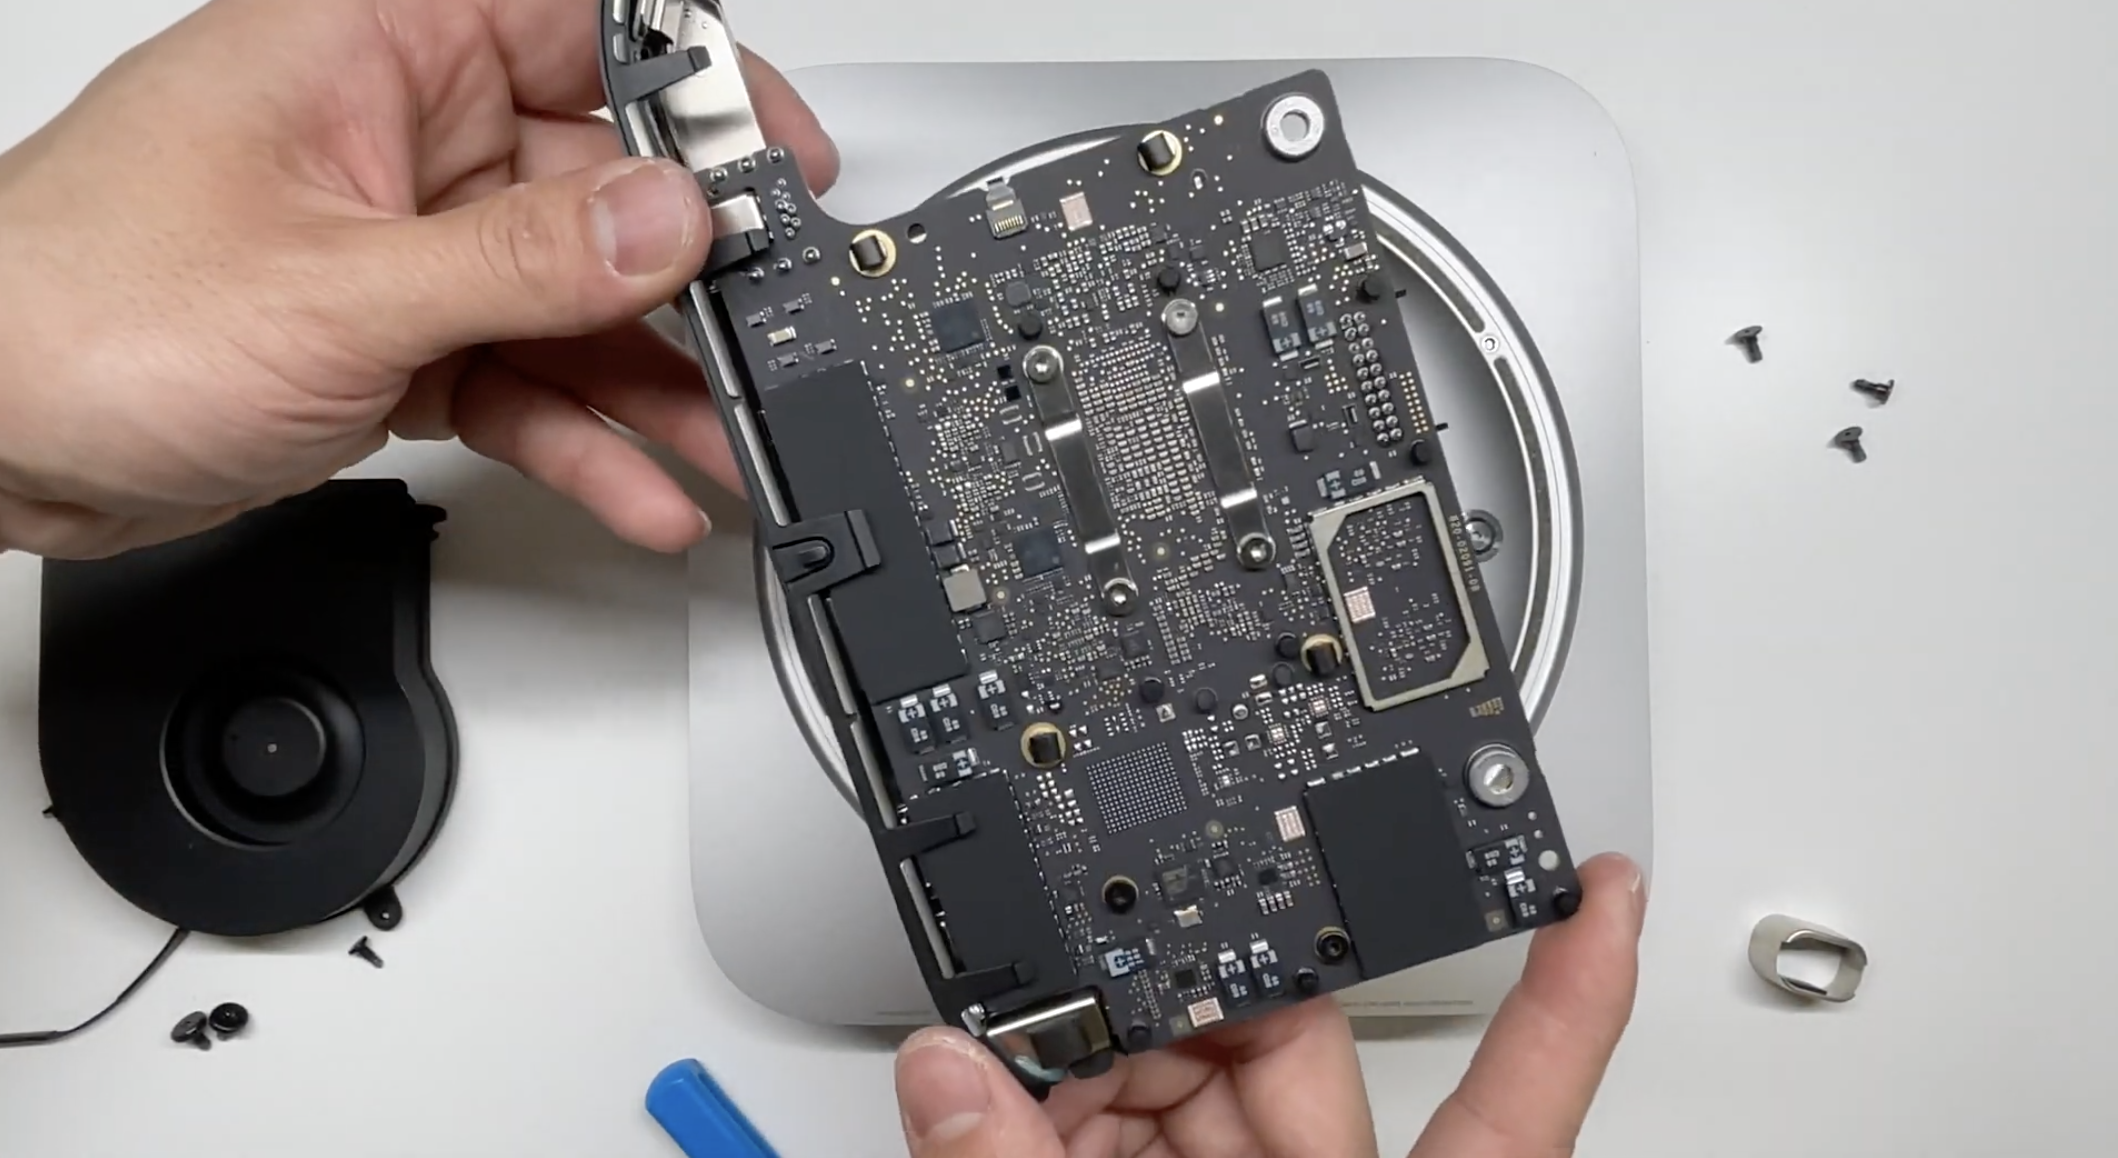 M1 Mac mini teardown reveals first look at slim internals - 9to5Mac